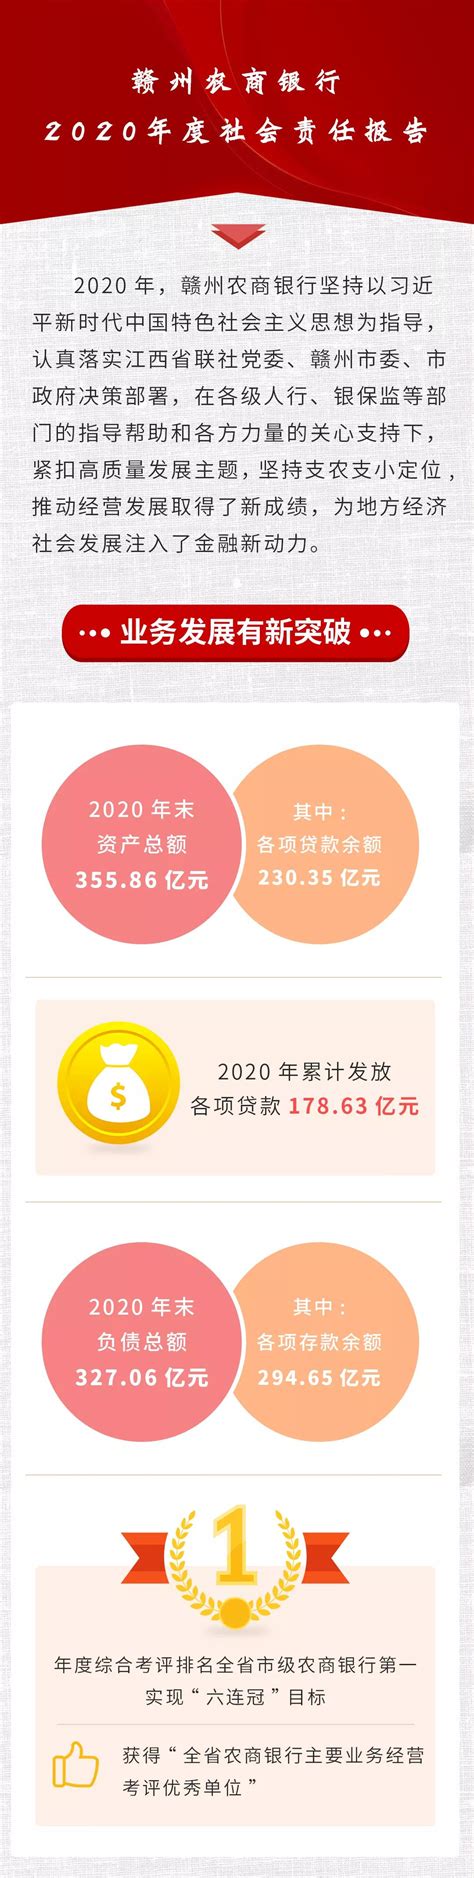 赣州农商银行2020年度社会责任报告-赣州金融网